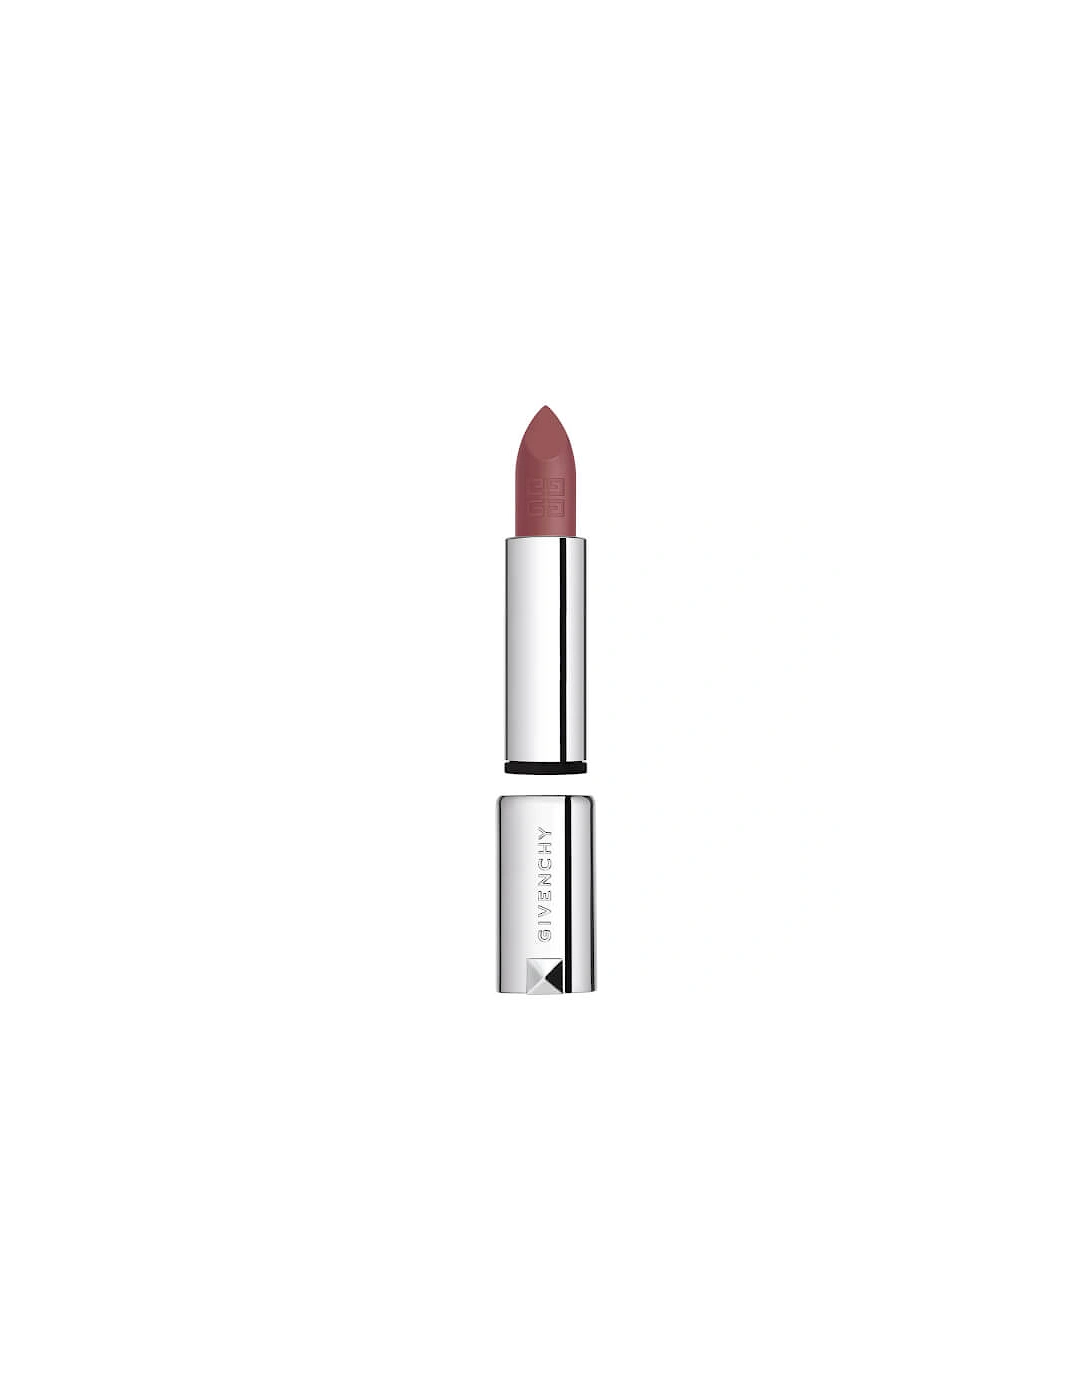 Le Rouge Sheer Velvet Lipstick Refill - N116 Nude Boisé, 2 of 1